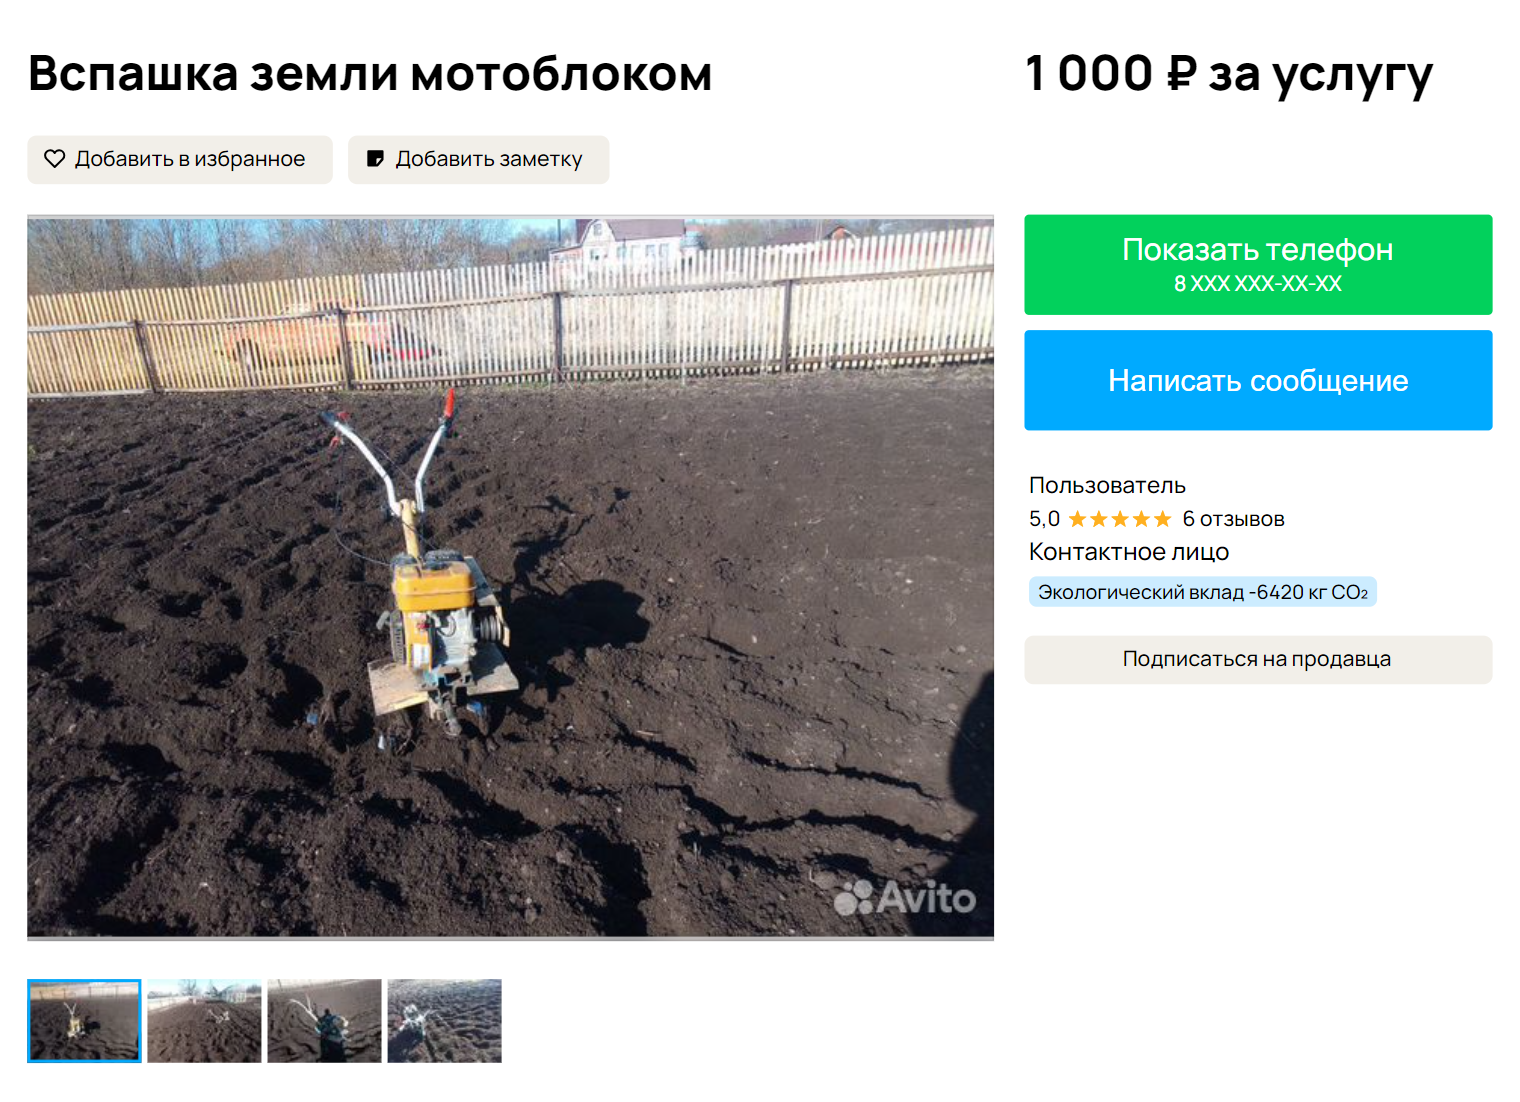 Вспашка участка мотоблоком стоит на «Авито» от 1000 ₽ за сотку. Источник: avito.ru